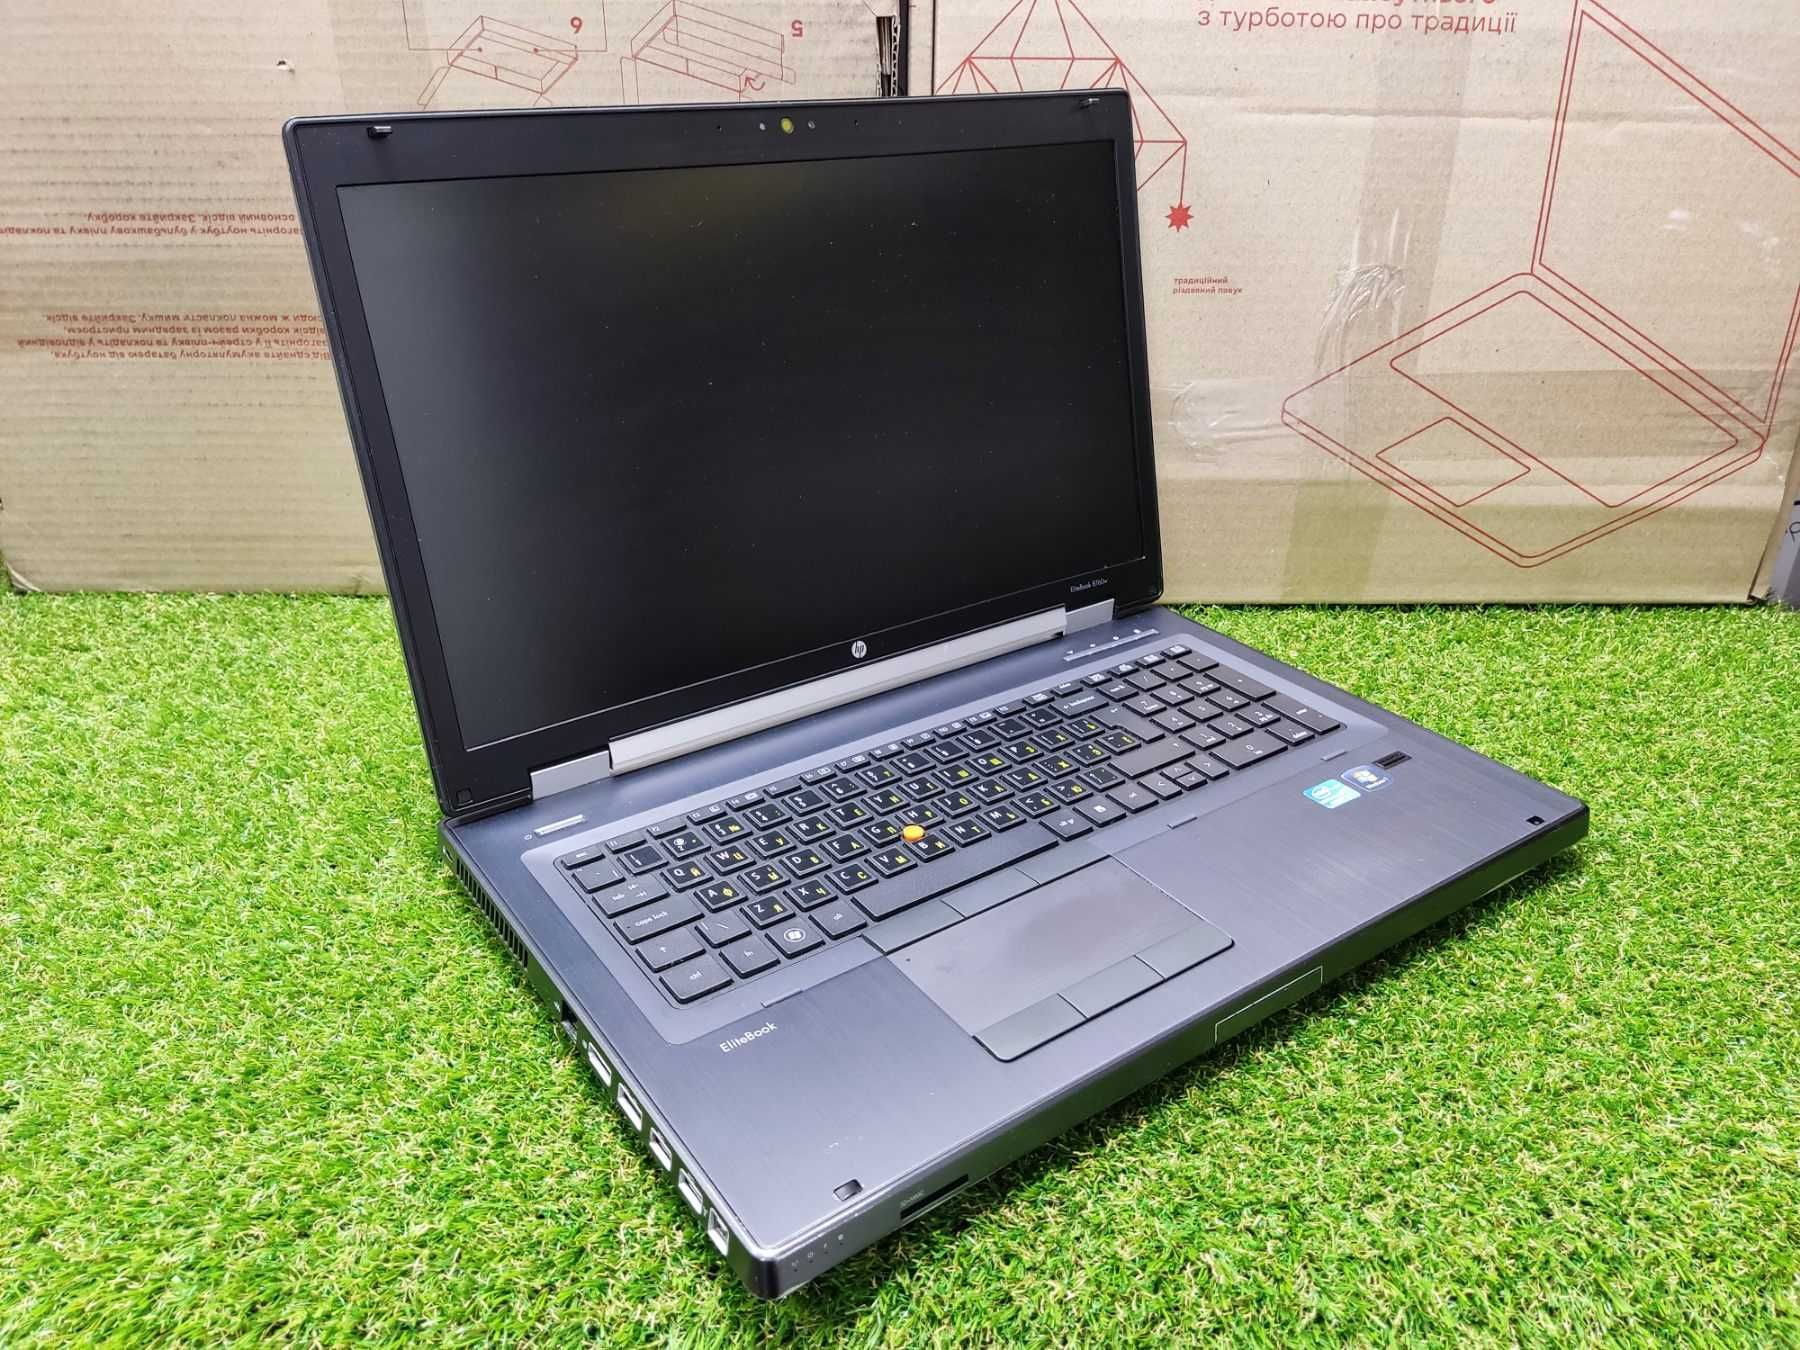 Ноутбук для навчання та дизайнерських робіт. HP EliteBook 8